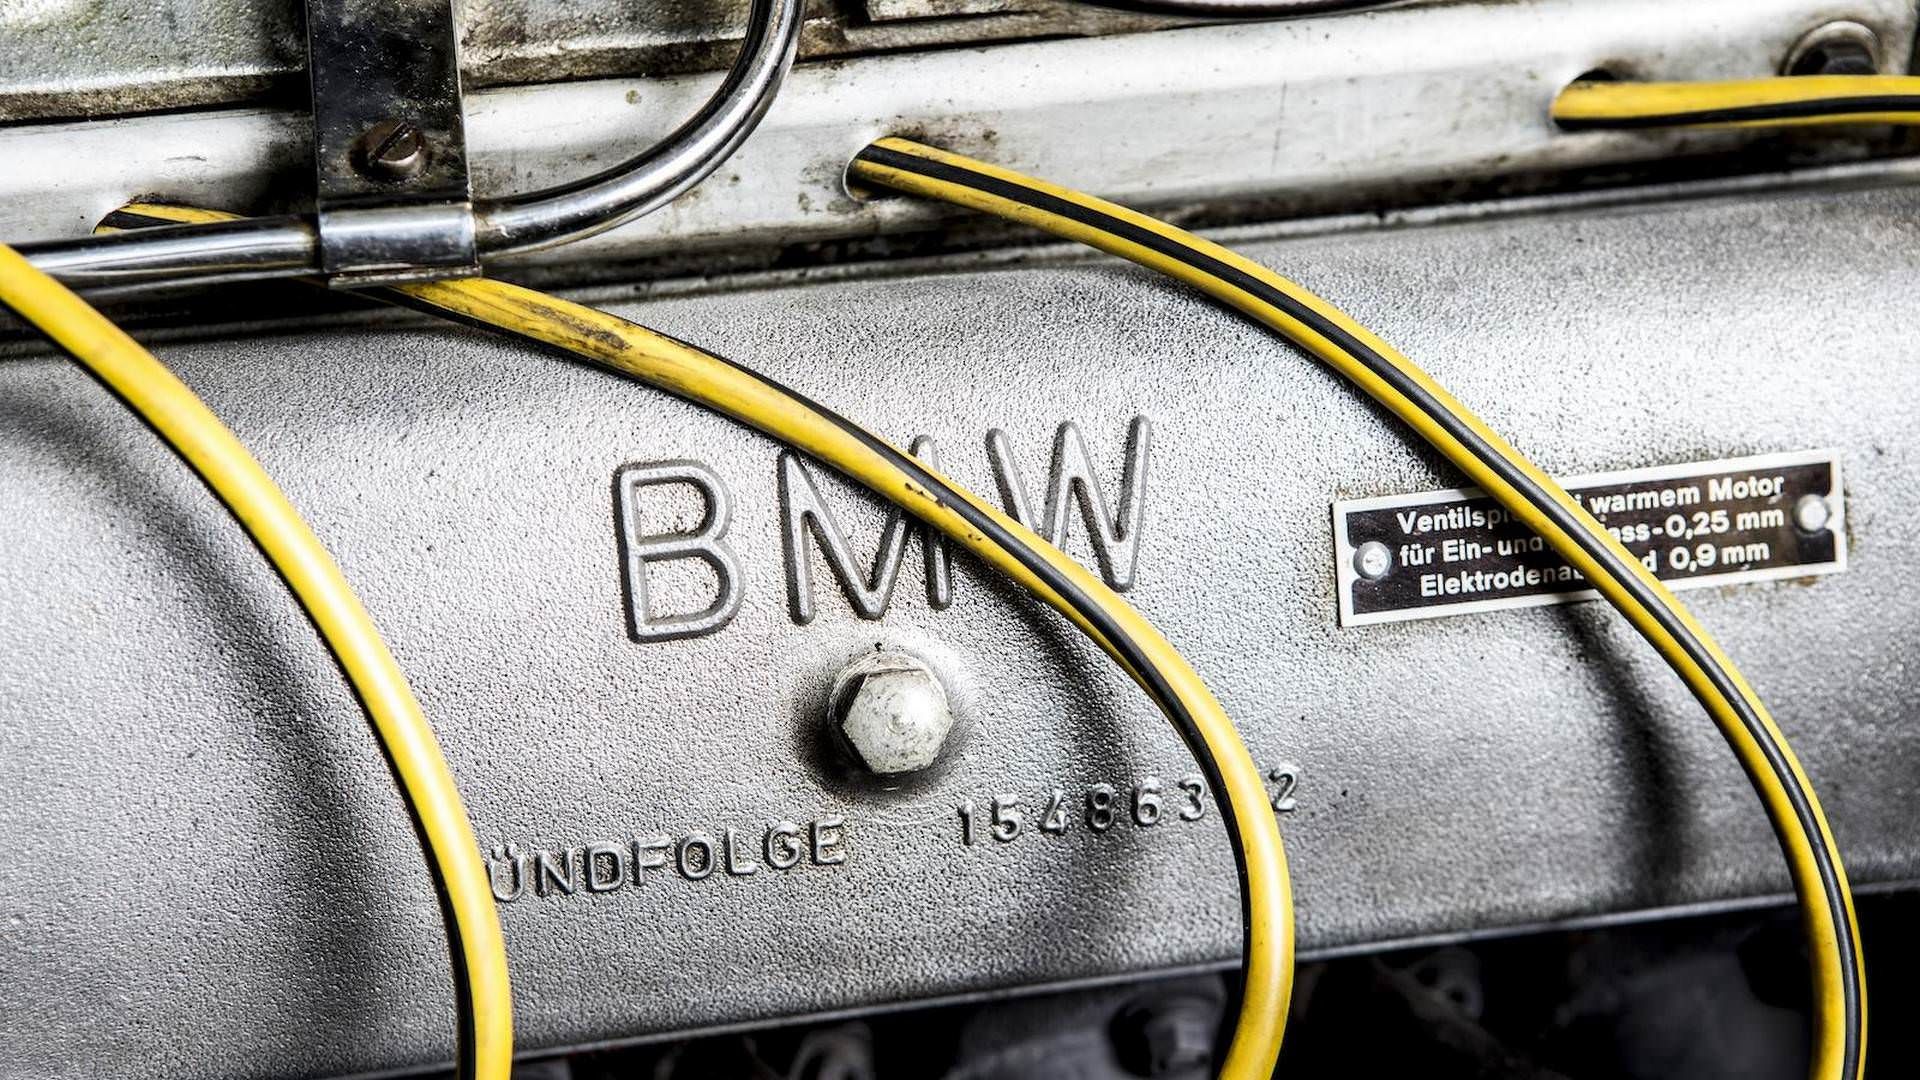 بی ام و 507 جان سرتیز / 1957 BMW John Surtees